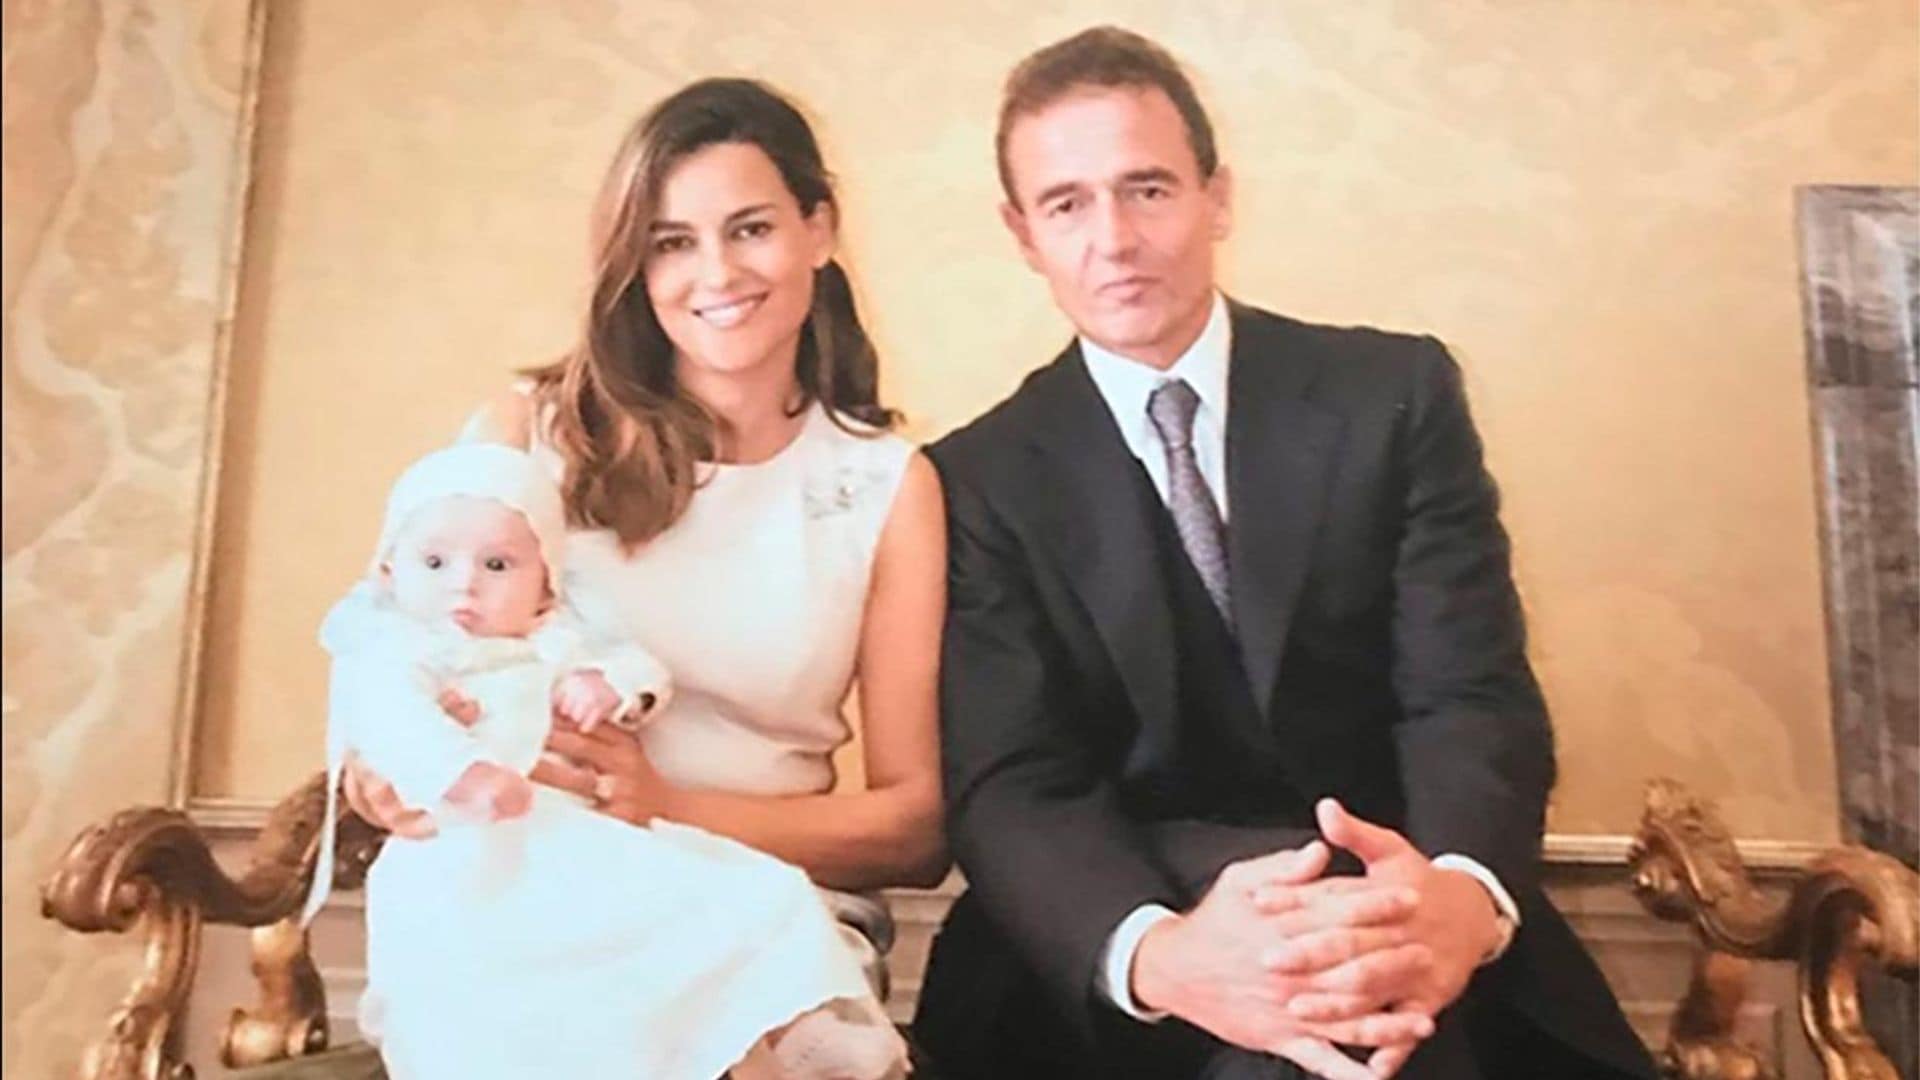 Alessandro Lequio recuerda el bautizo de su hija Ginevra Ena en Roma